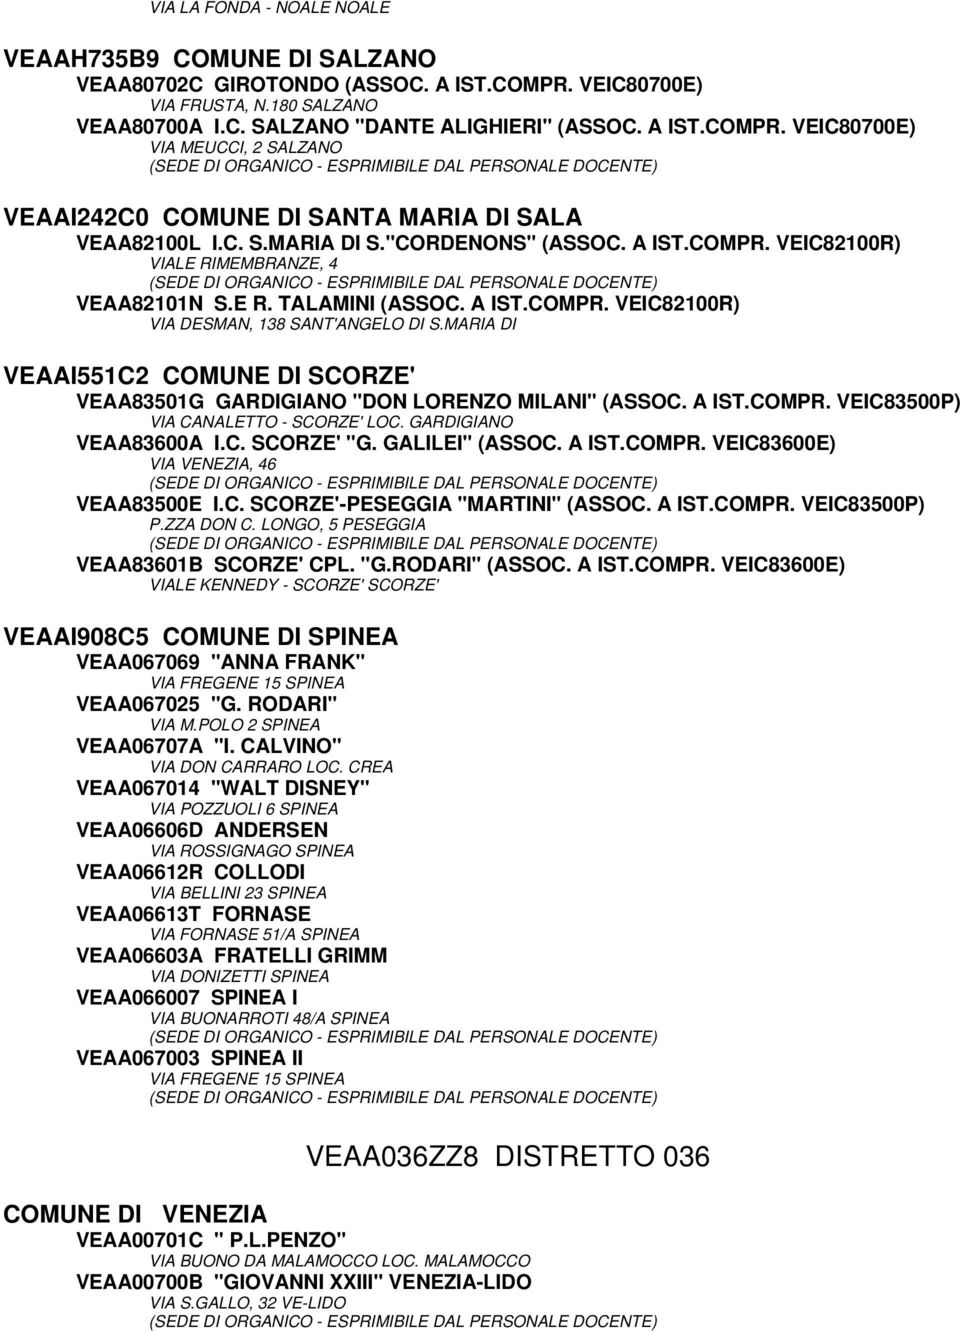 MARIA DI VEAAI551C2 COMUNE DI SCORZE' VEAA83501G GARDIGIANO "DON LORENZO MILANI" (ASSOC. A IST.COMPR. VEIC83500P) VIA CANALETTO - SCORZE' LOC. GARDIGIANO VEAA83600A I.C. SCORZE' "G. GALILEI" (ASSOC.